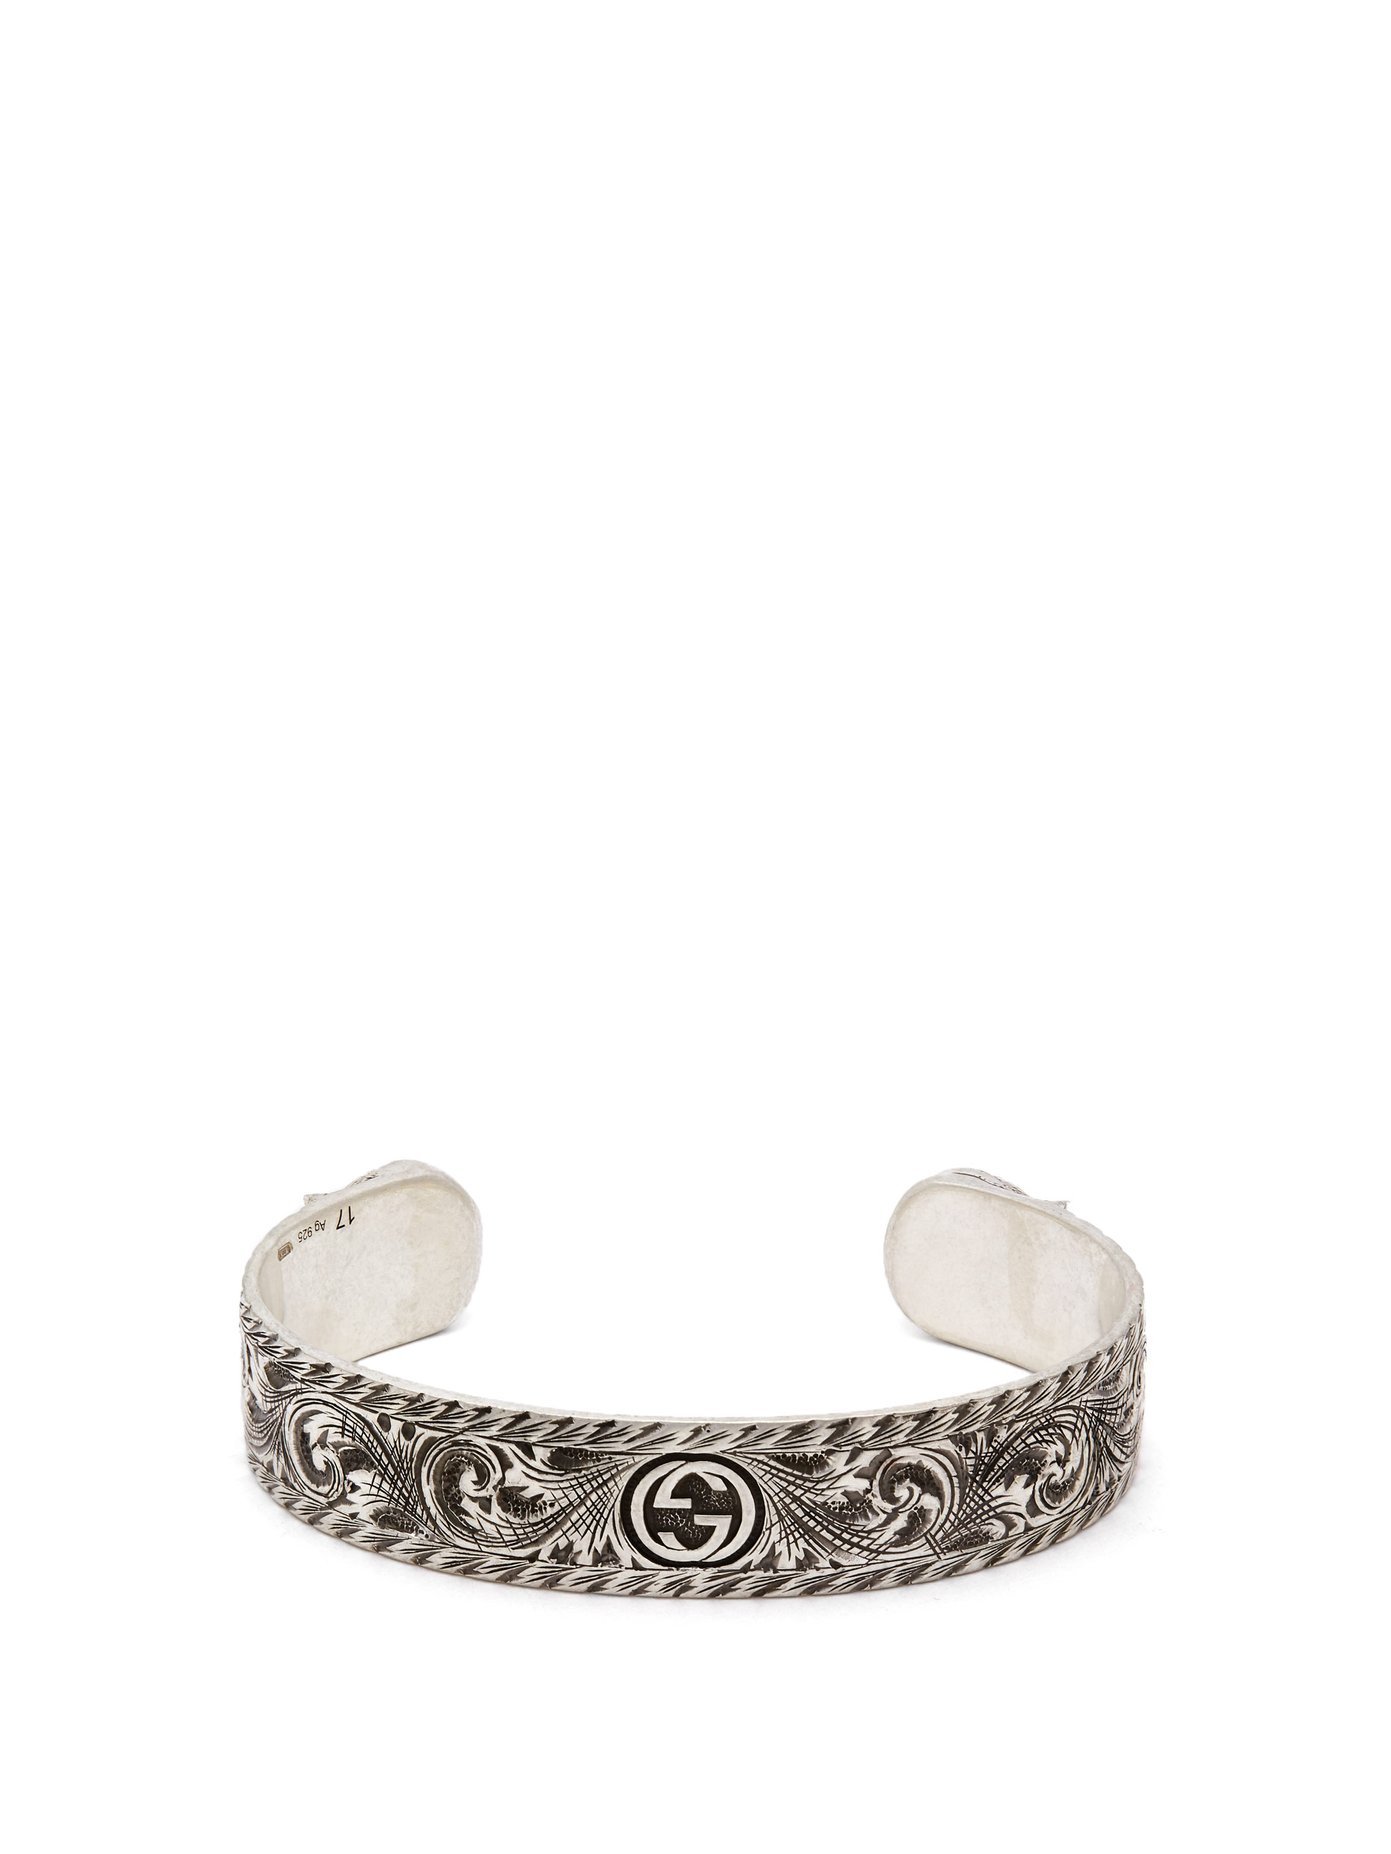 gucci cuff bracelet silver